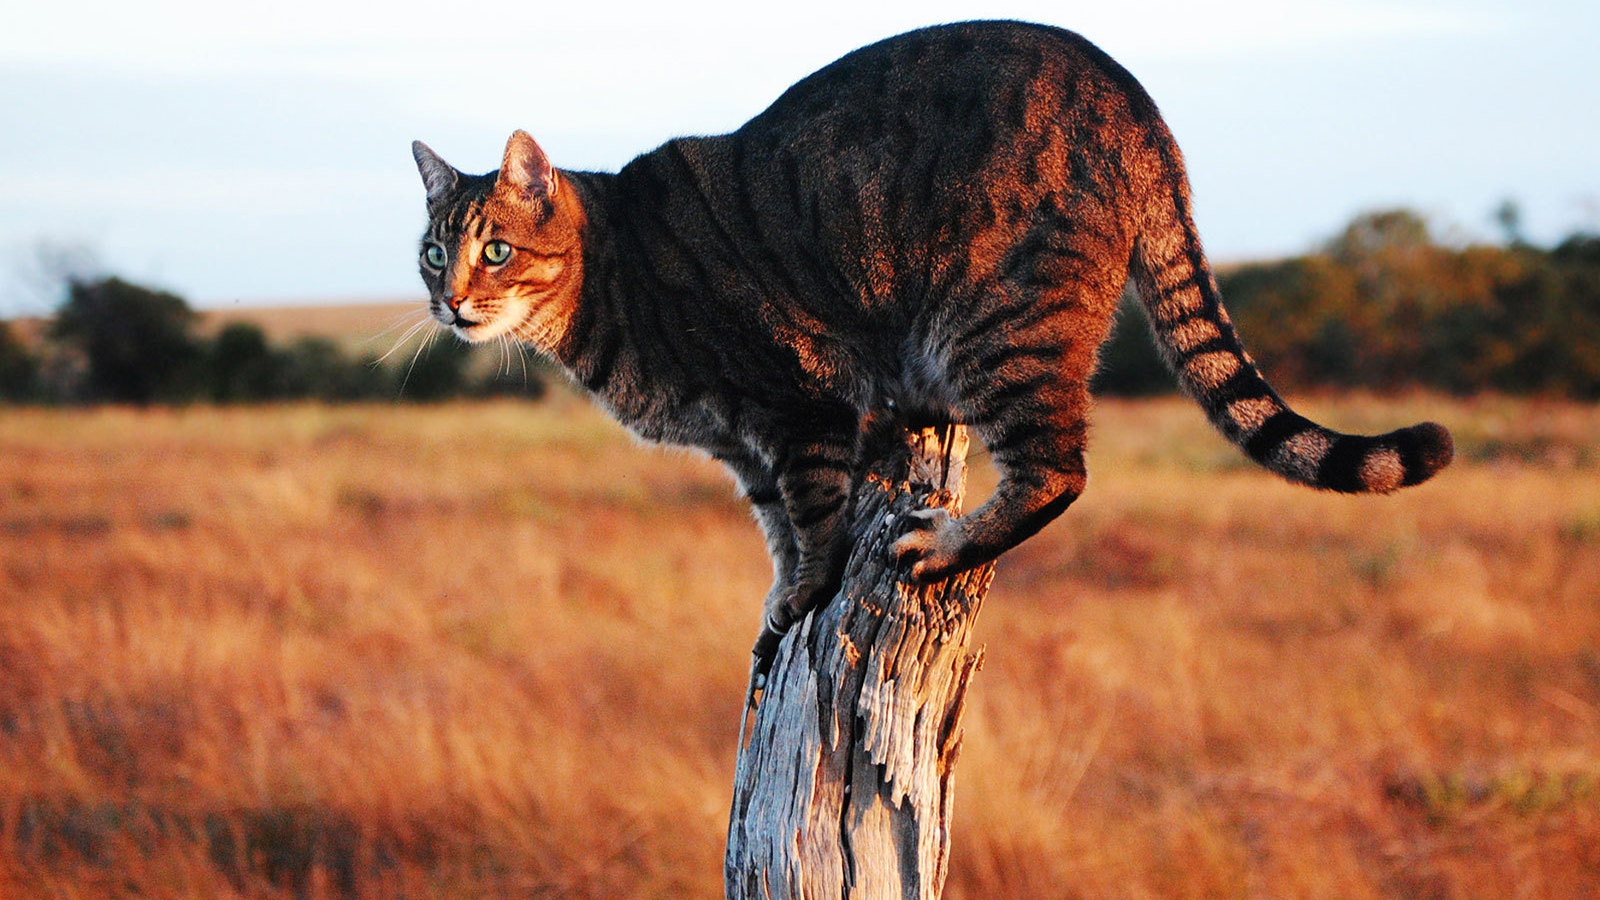 Savannah Cat on Stump for 1600 x 900 HDTV resolution